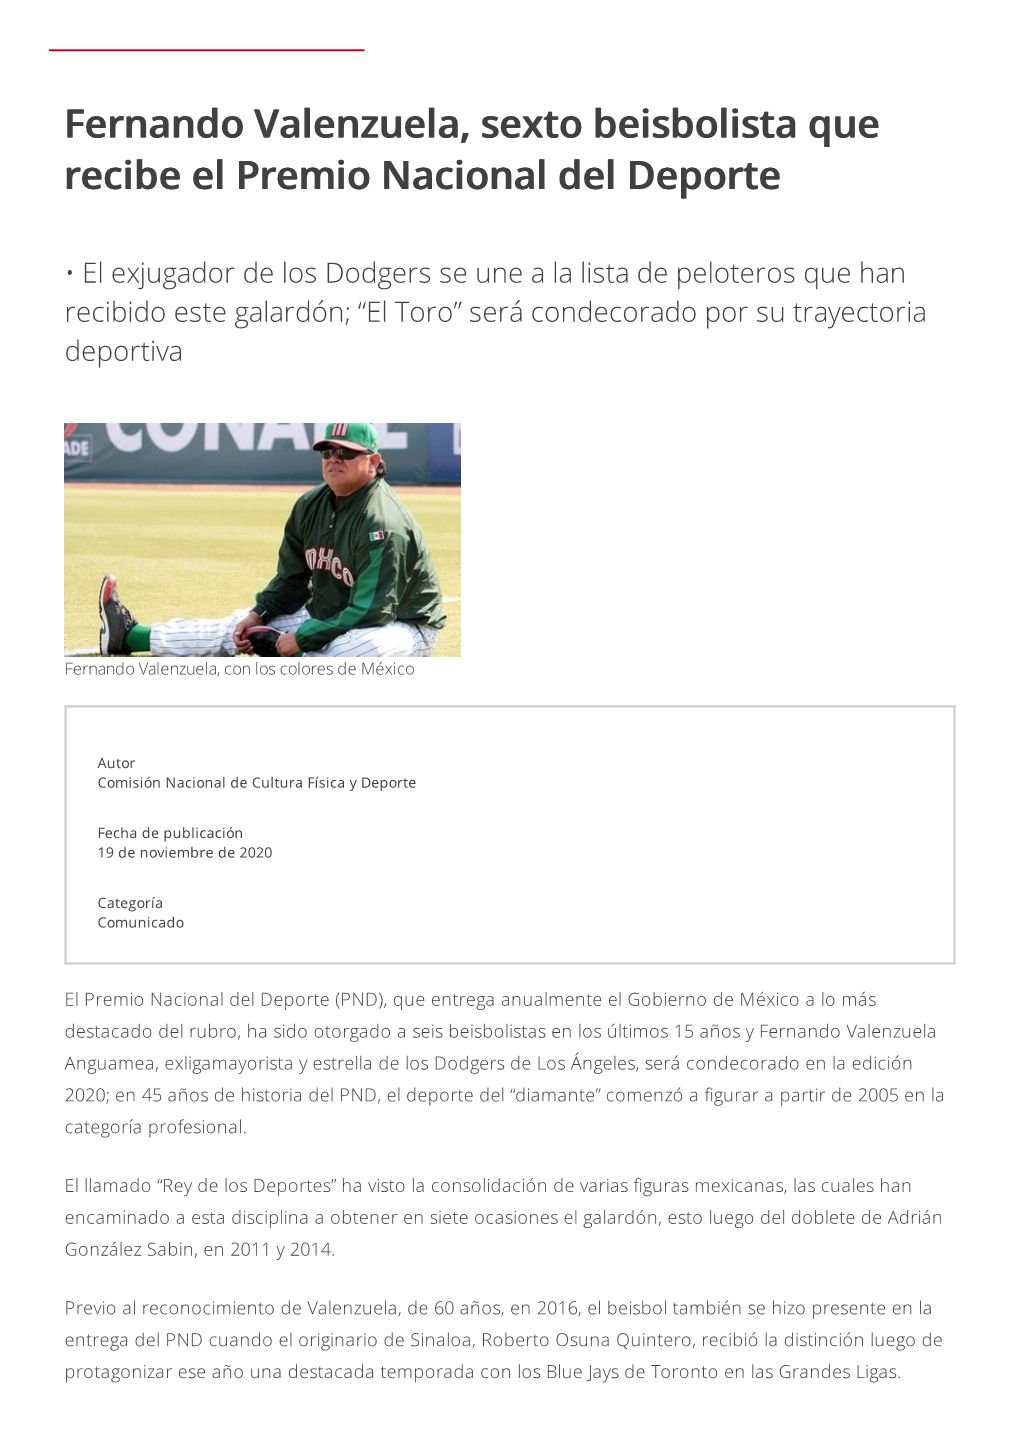 Fernando Valenzuela, Sexto Beisbolista Que Recibe El Premio Nacional Del Deporte